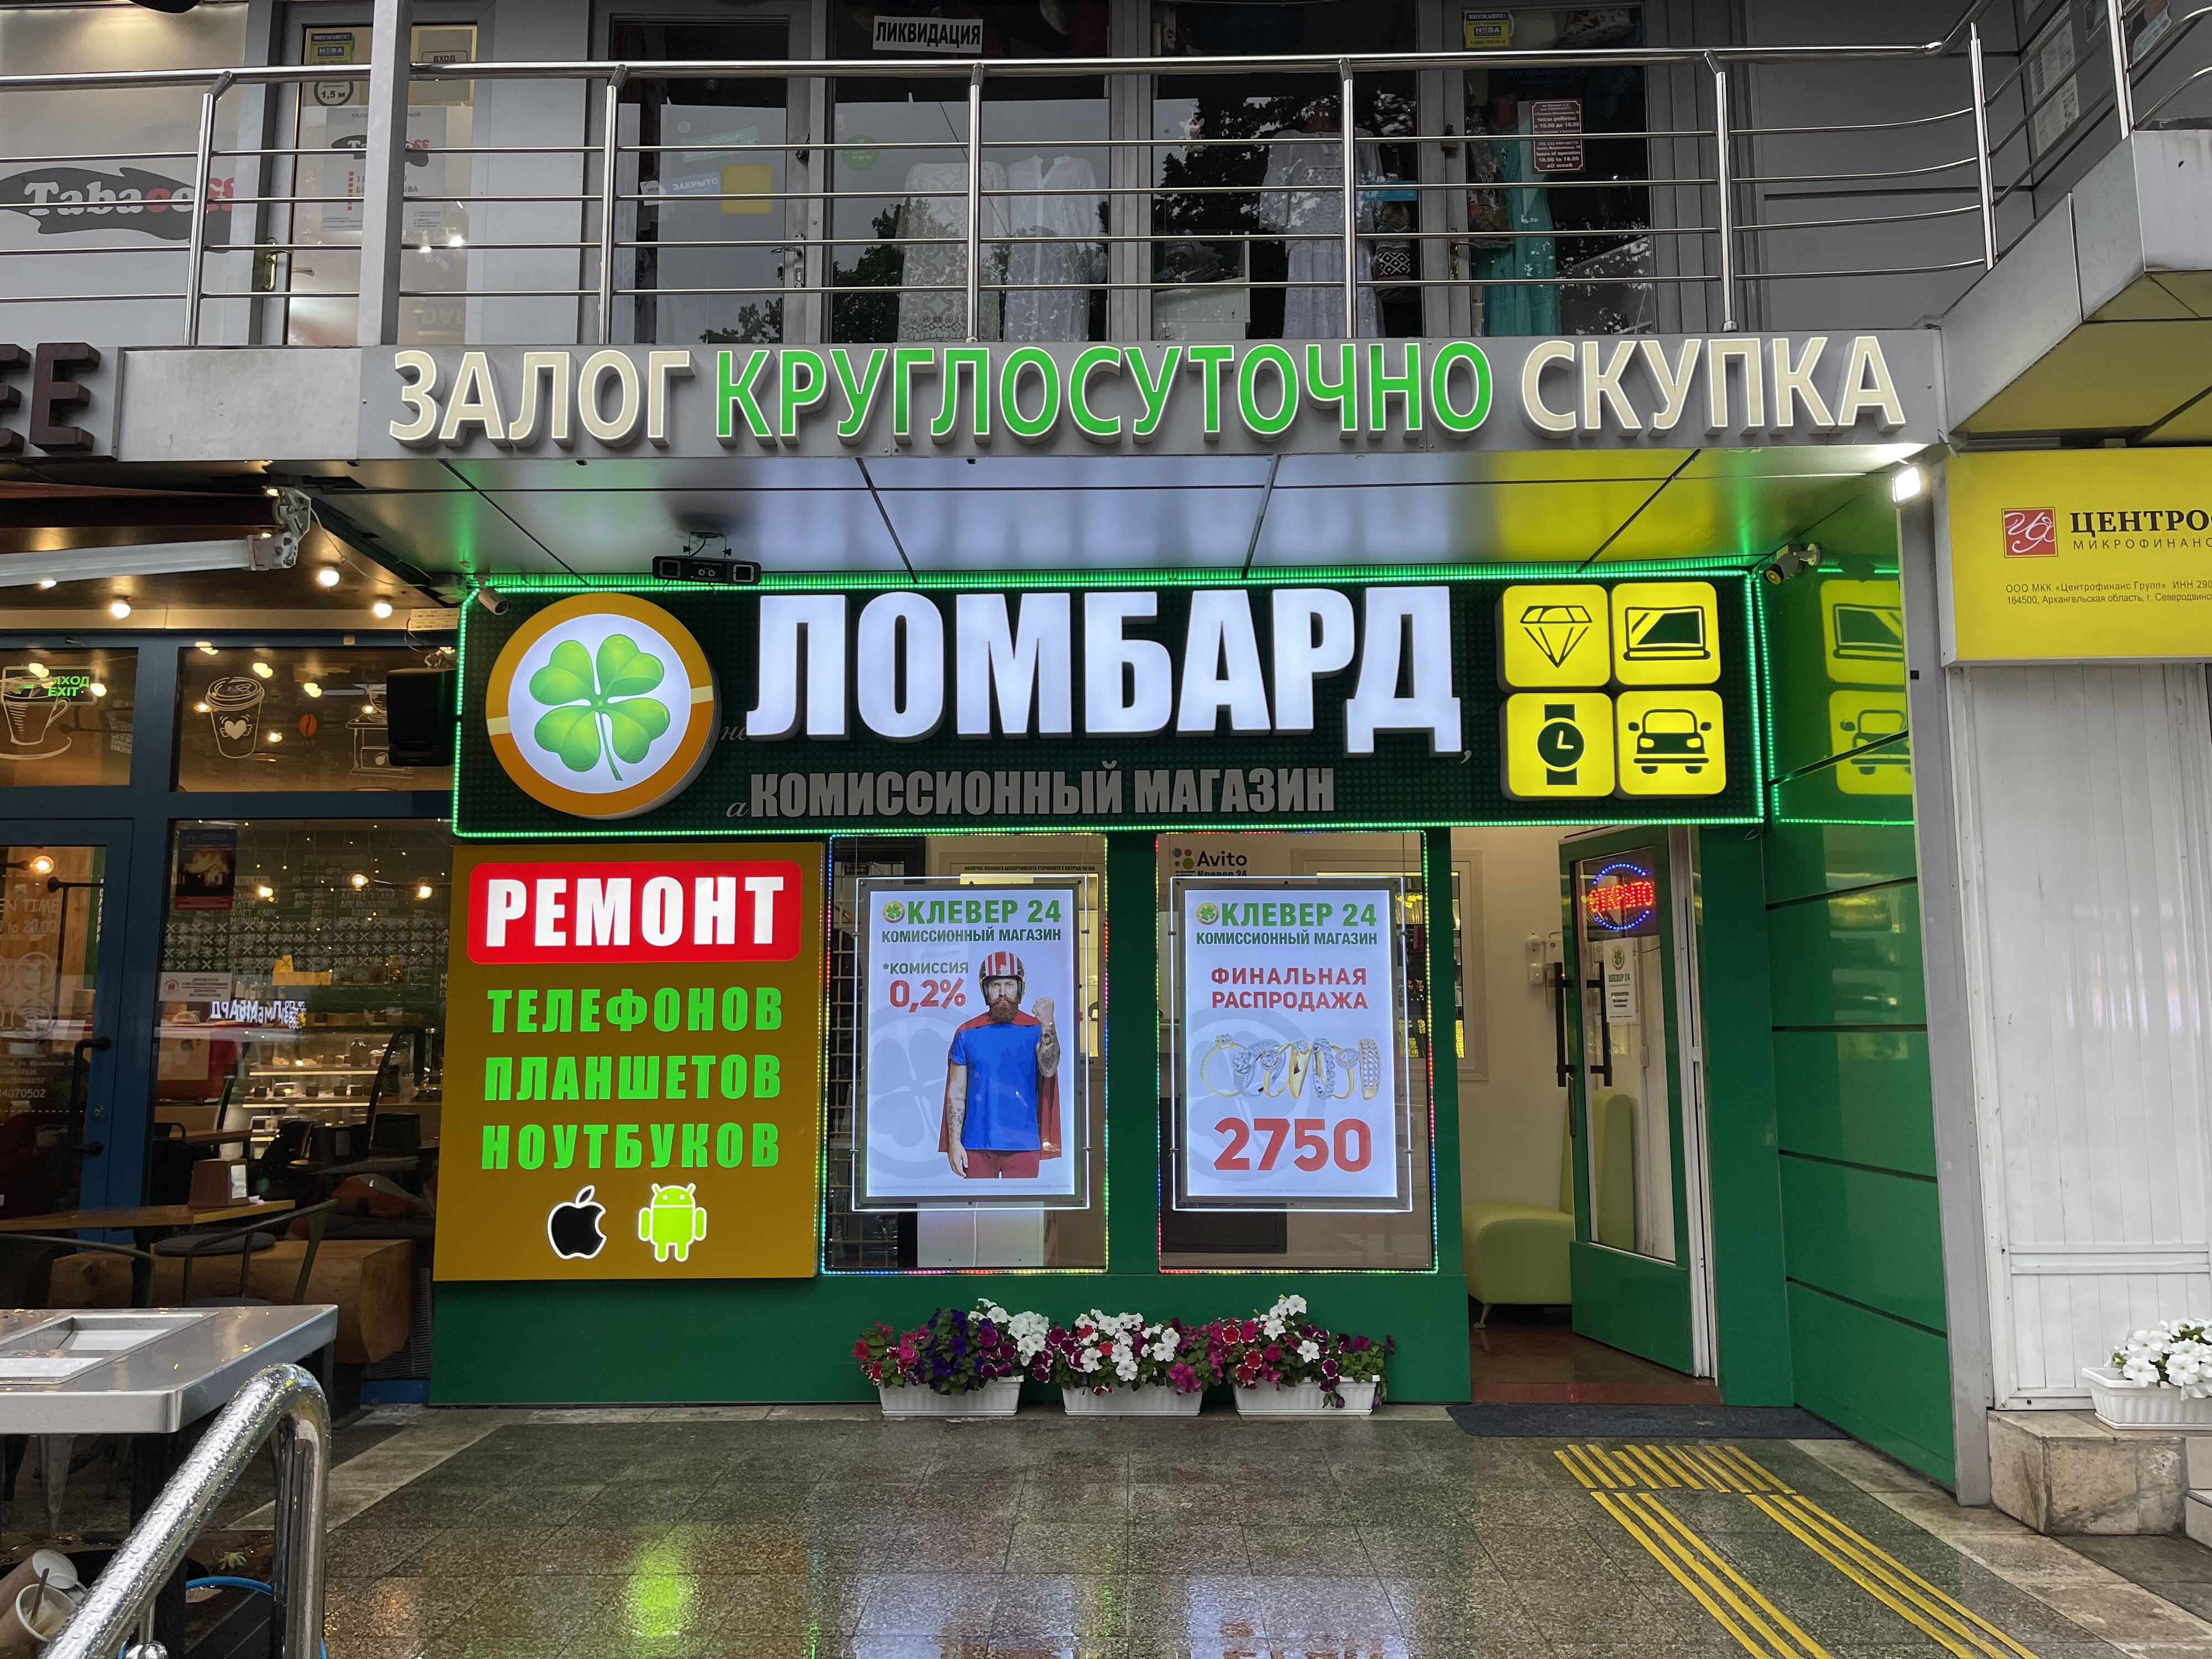 Магазин Электротоваров В Сочи